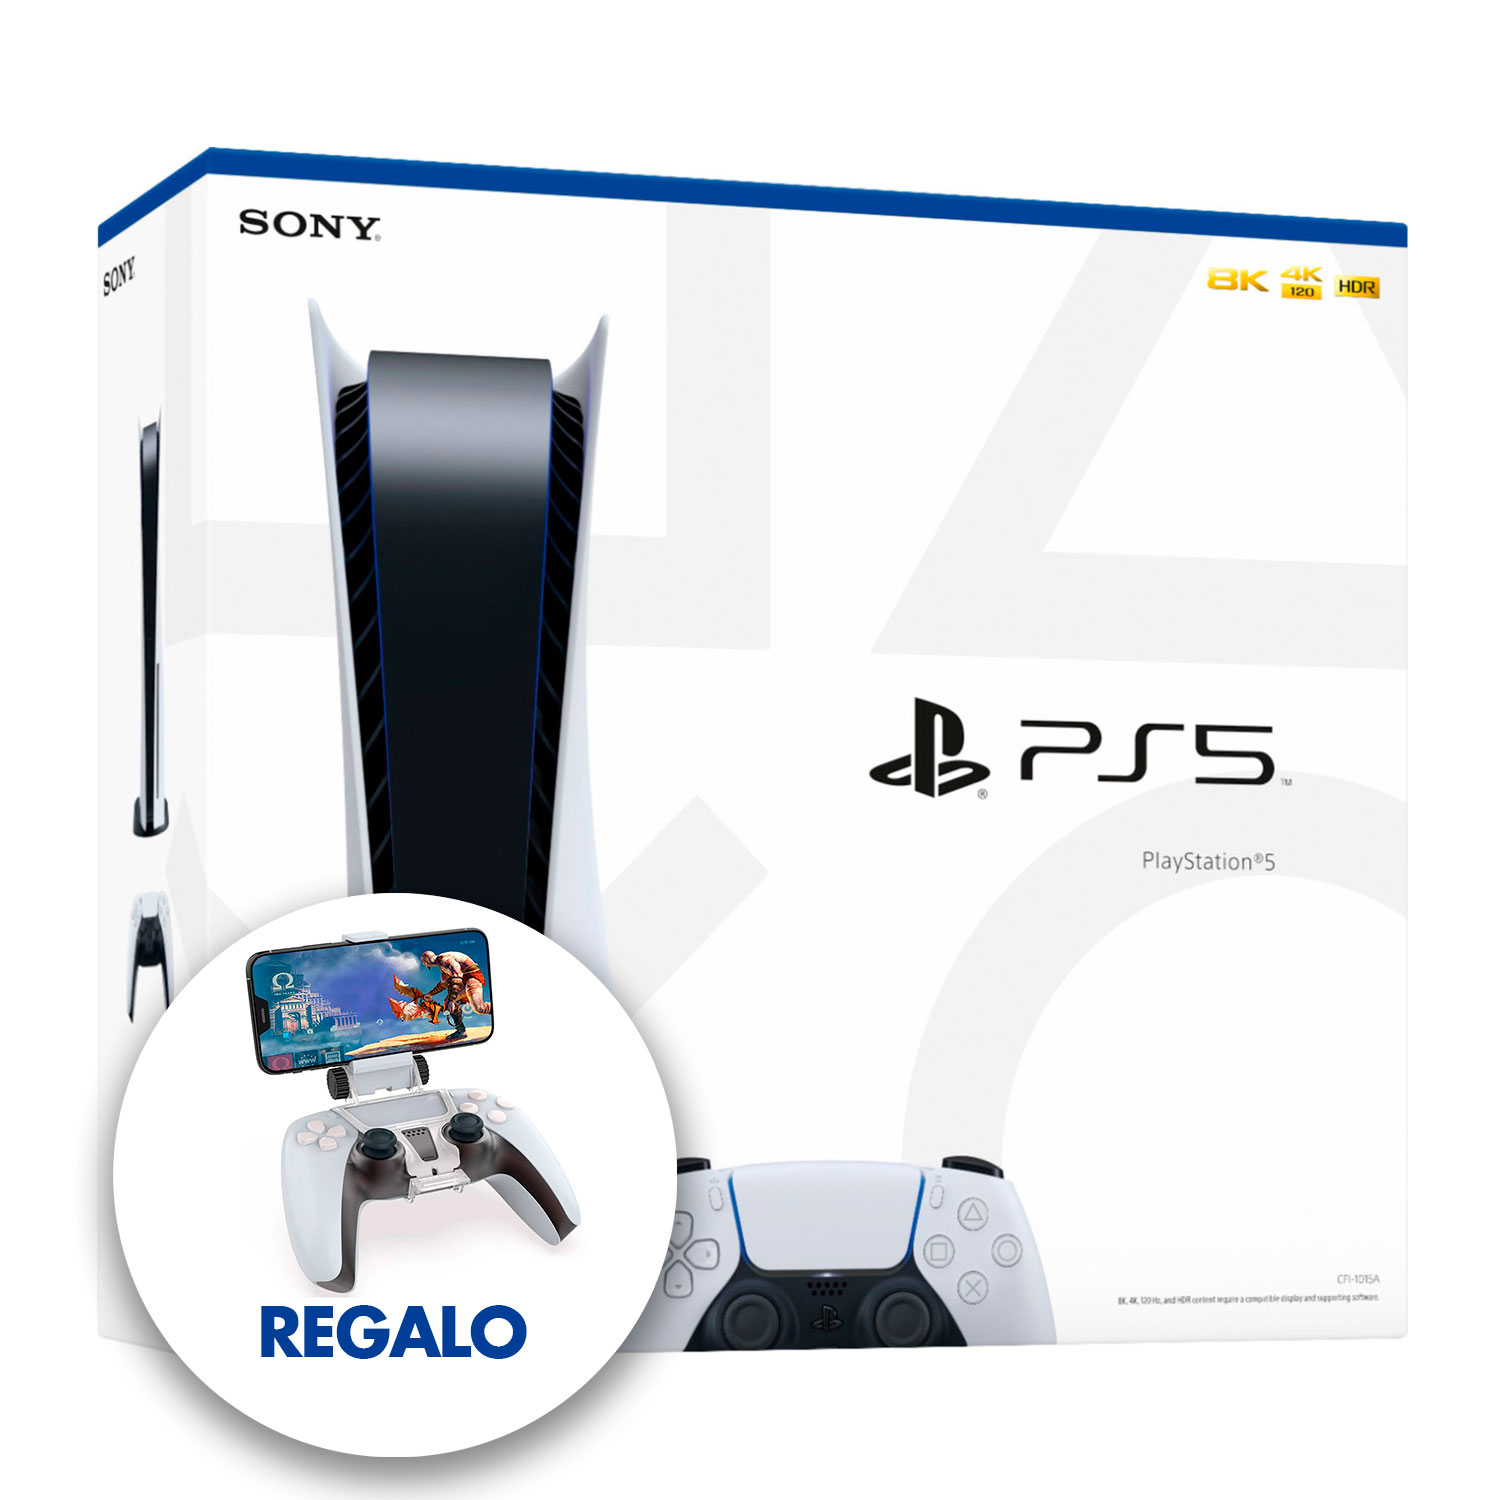 Soporte de Celular para Mando PS5 Dualsense PlayStation 5